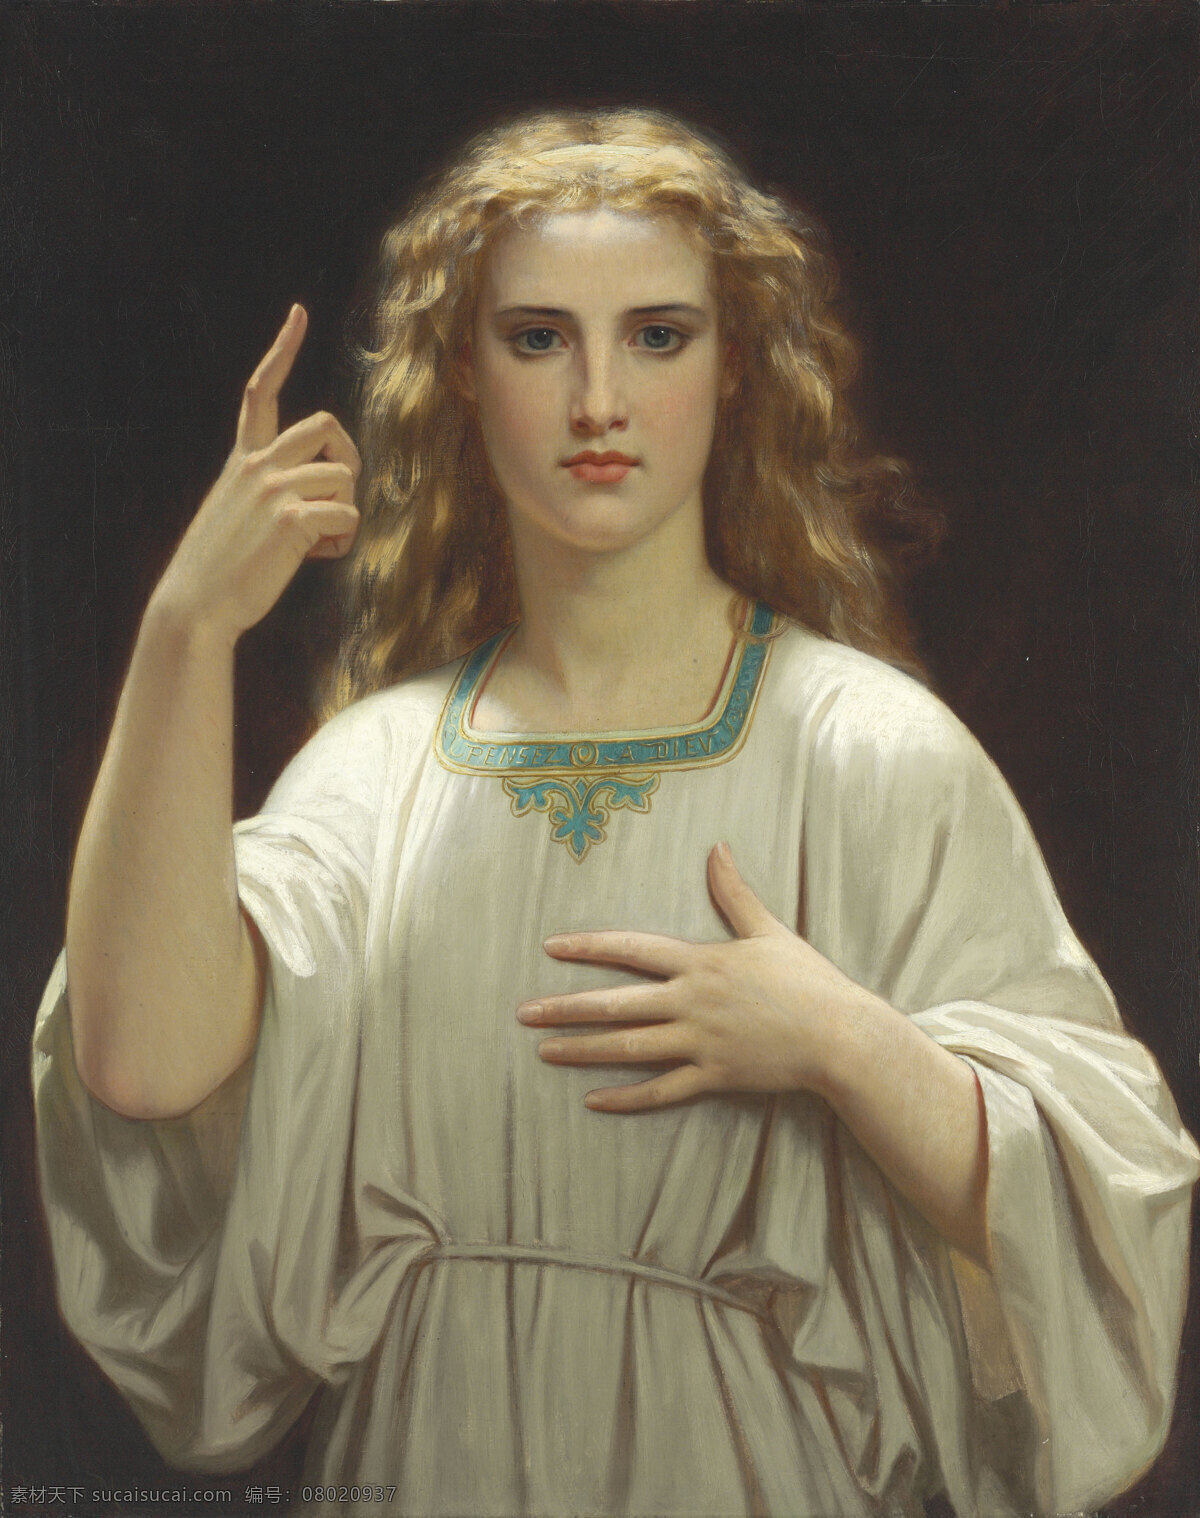 圣 梅格尔 信仰 圣经故事 圣徙 面目安详和善 半身肖像 宗教油画 19世纪油画 油画 文化艺术 绘画书法